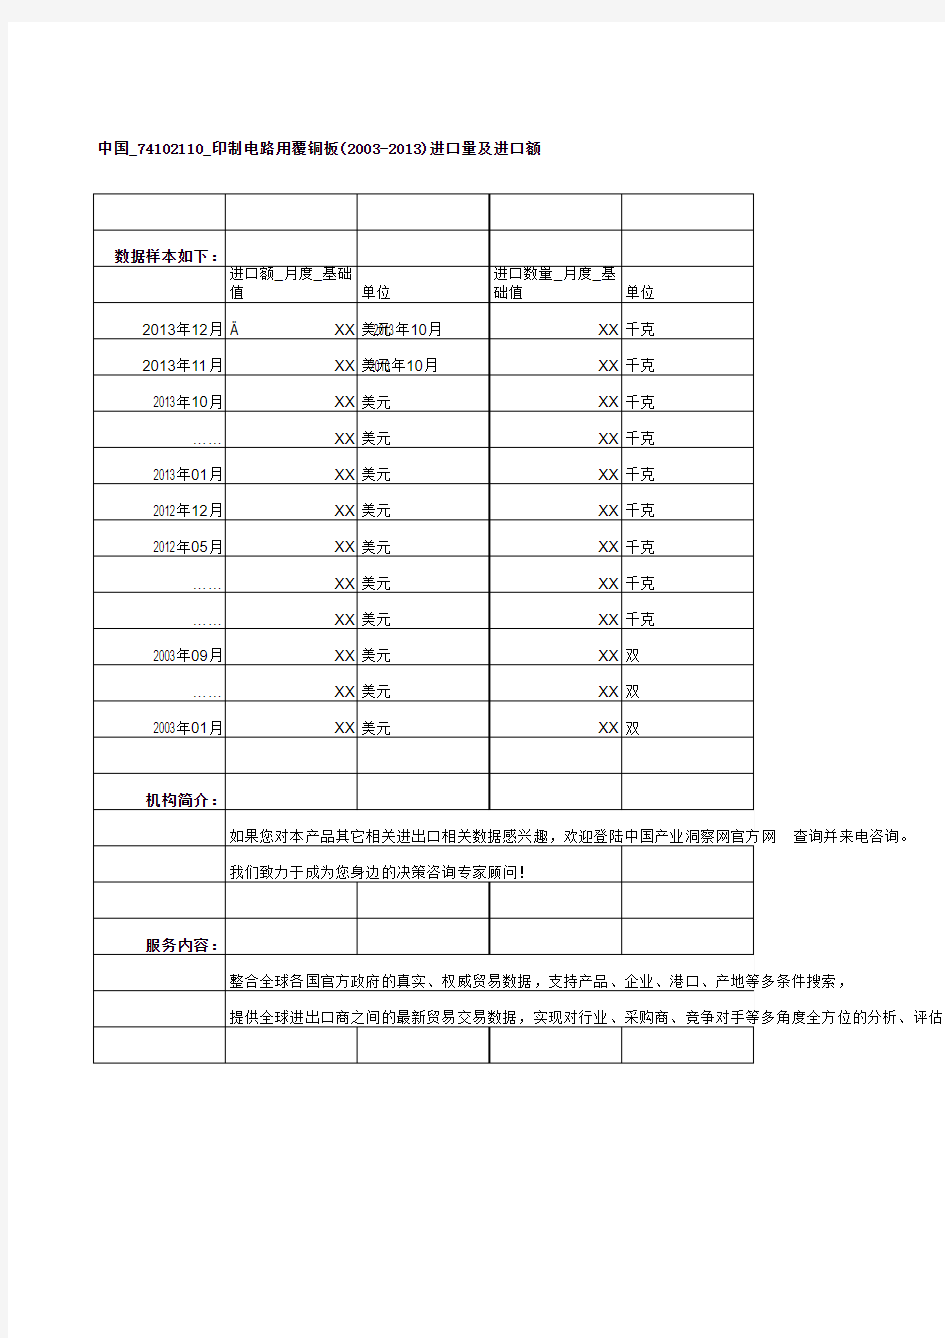 中国_74102110_印制电路用覆铜板(2003-2013)进口量及进口额